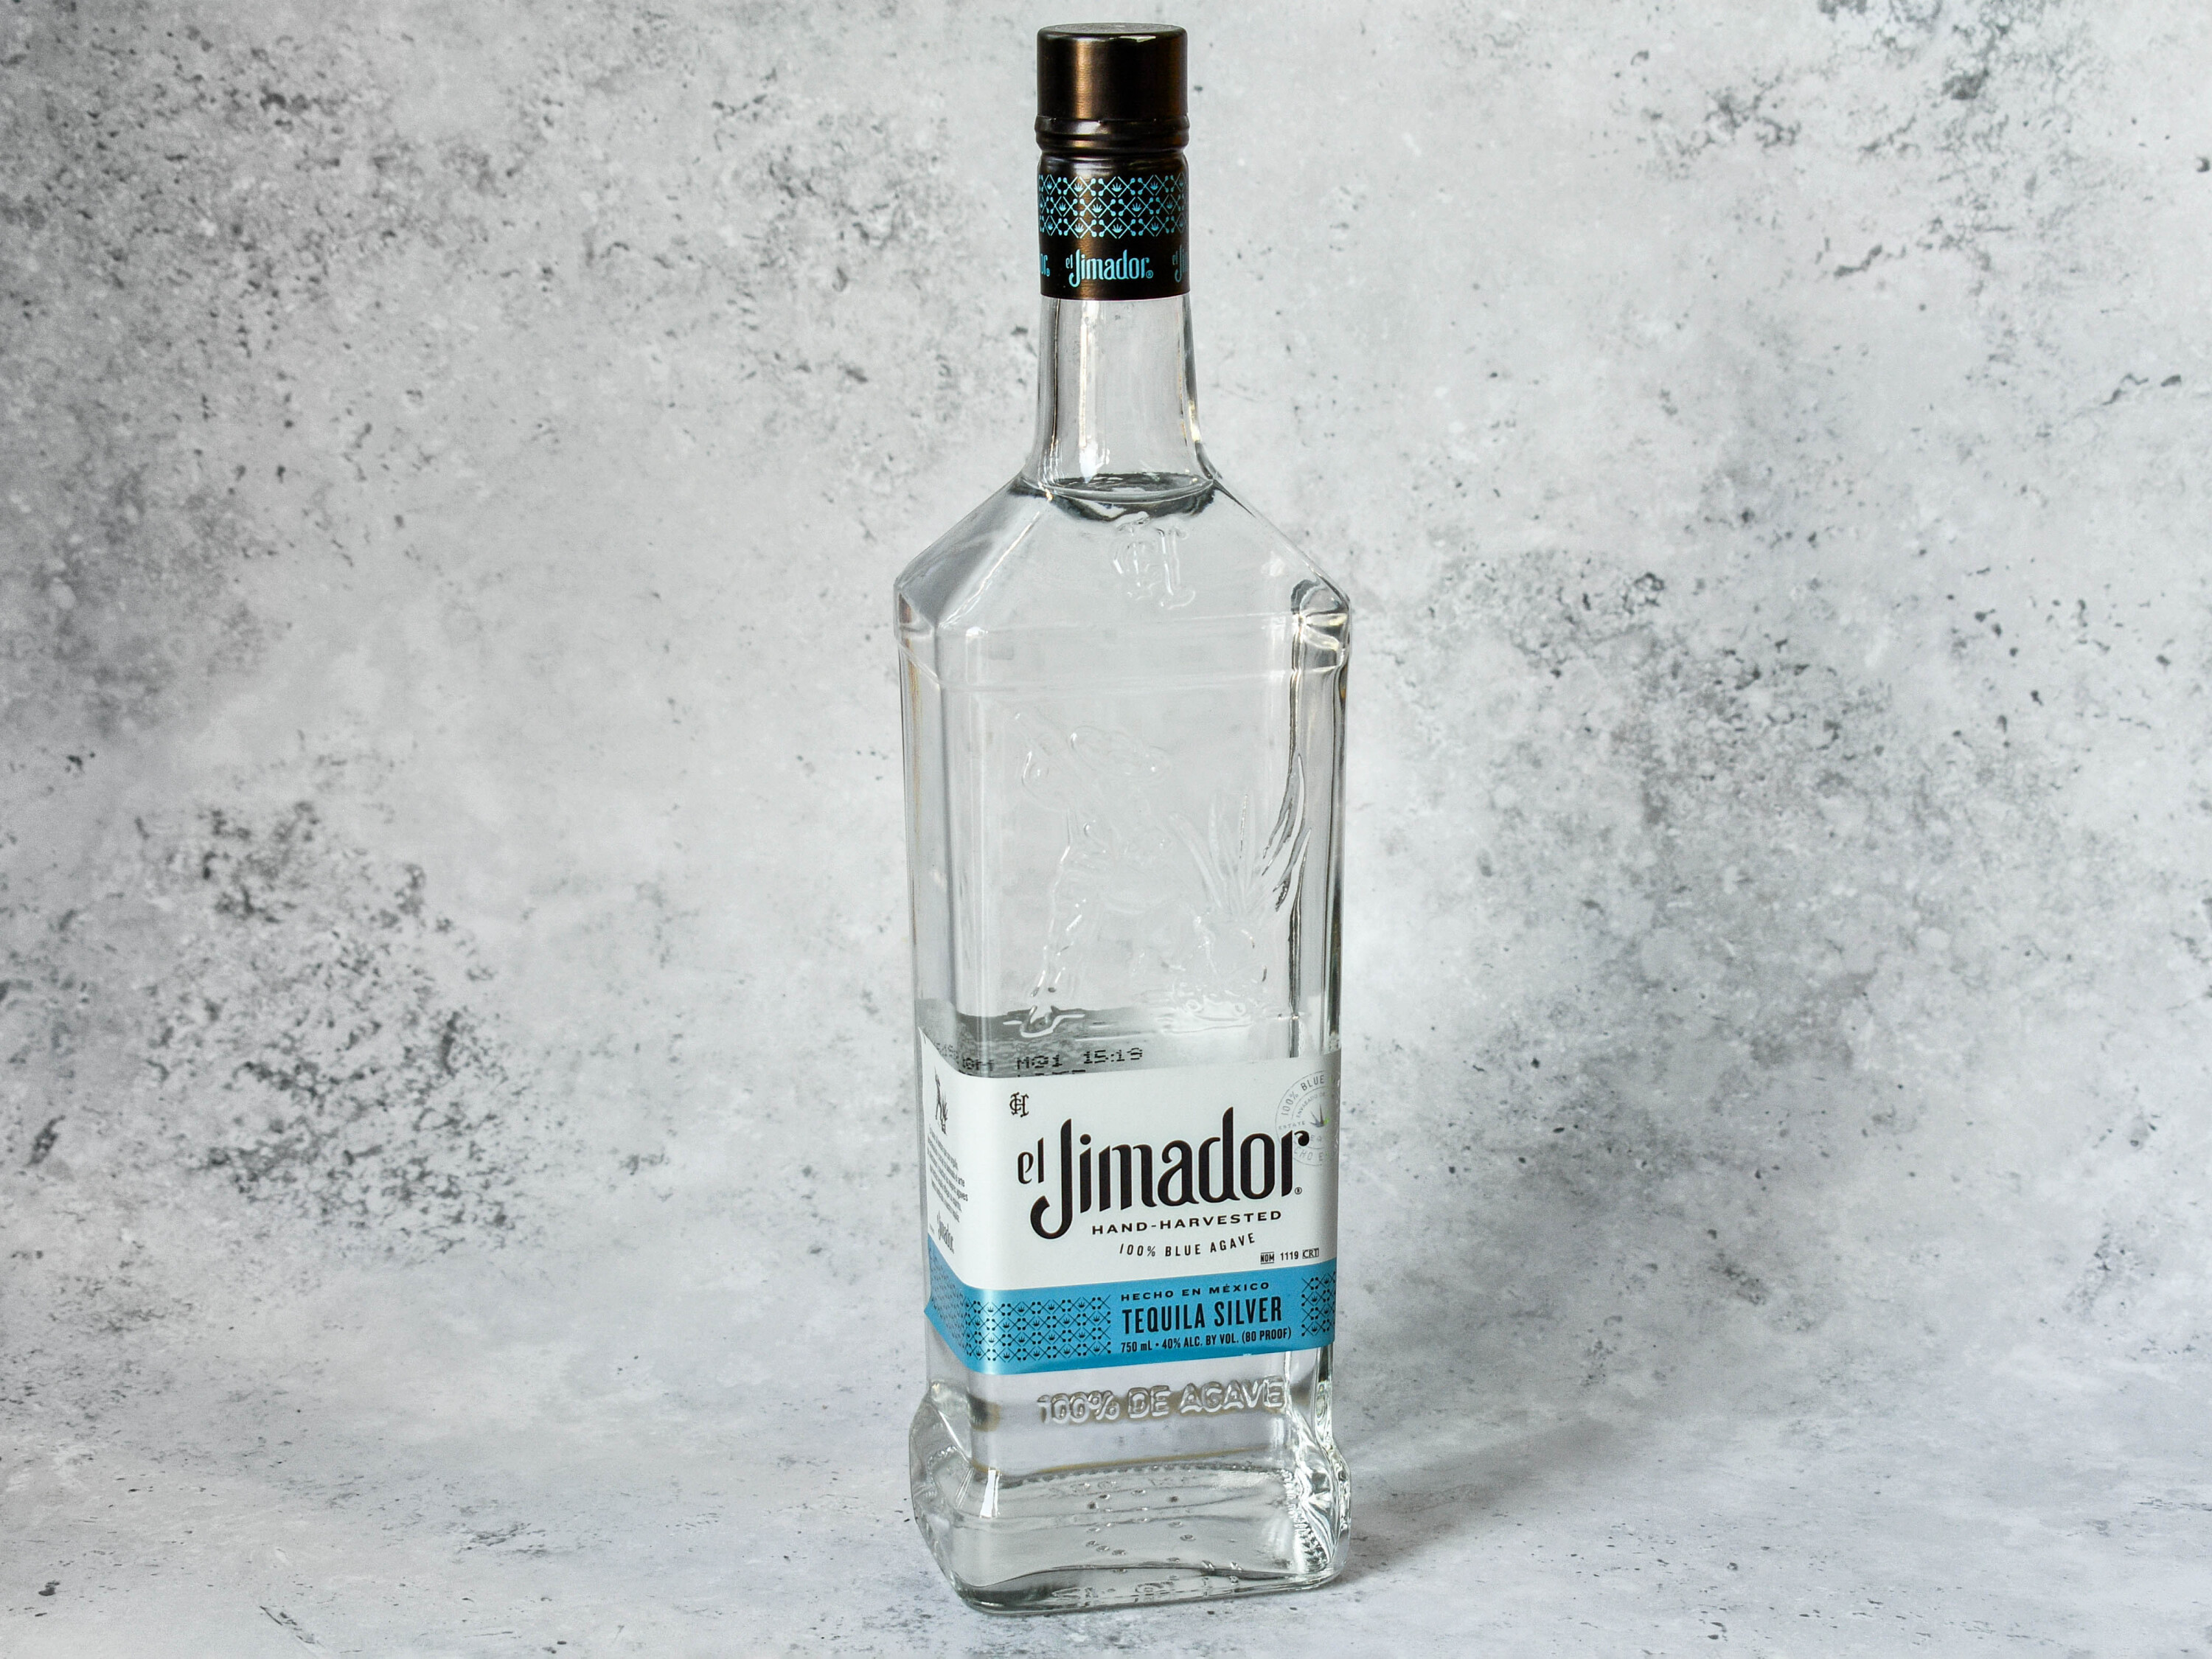 Order El Jimador Tequila Silver food online from A & W Liquor store, La Mesa on bringmethat.com